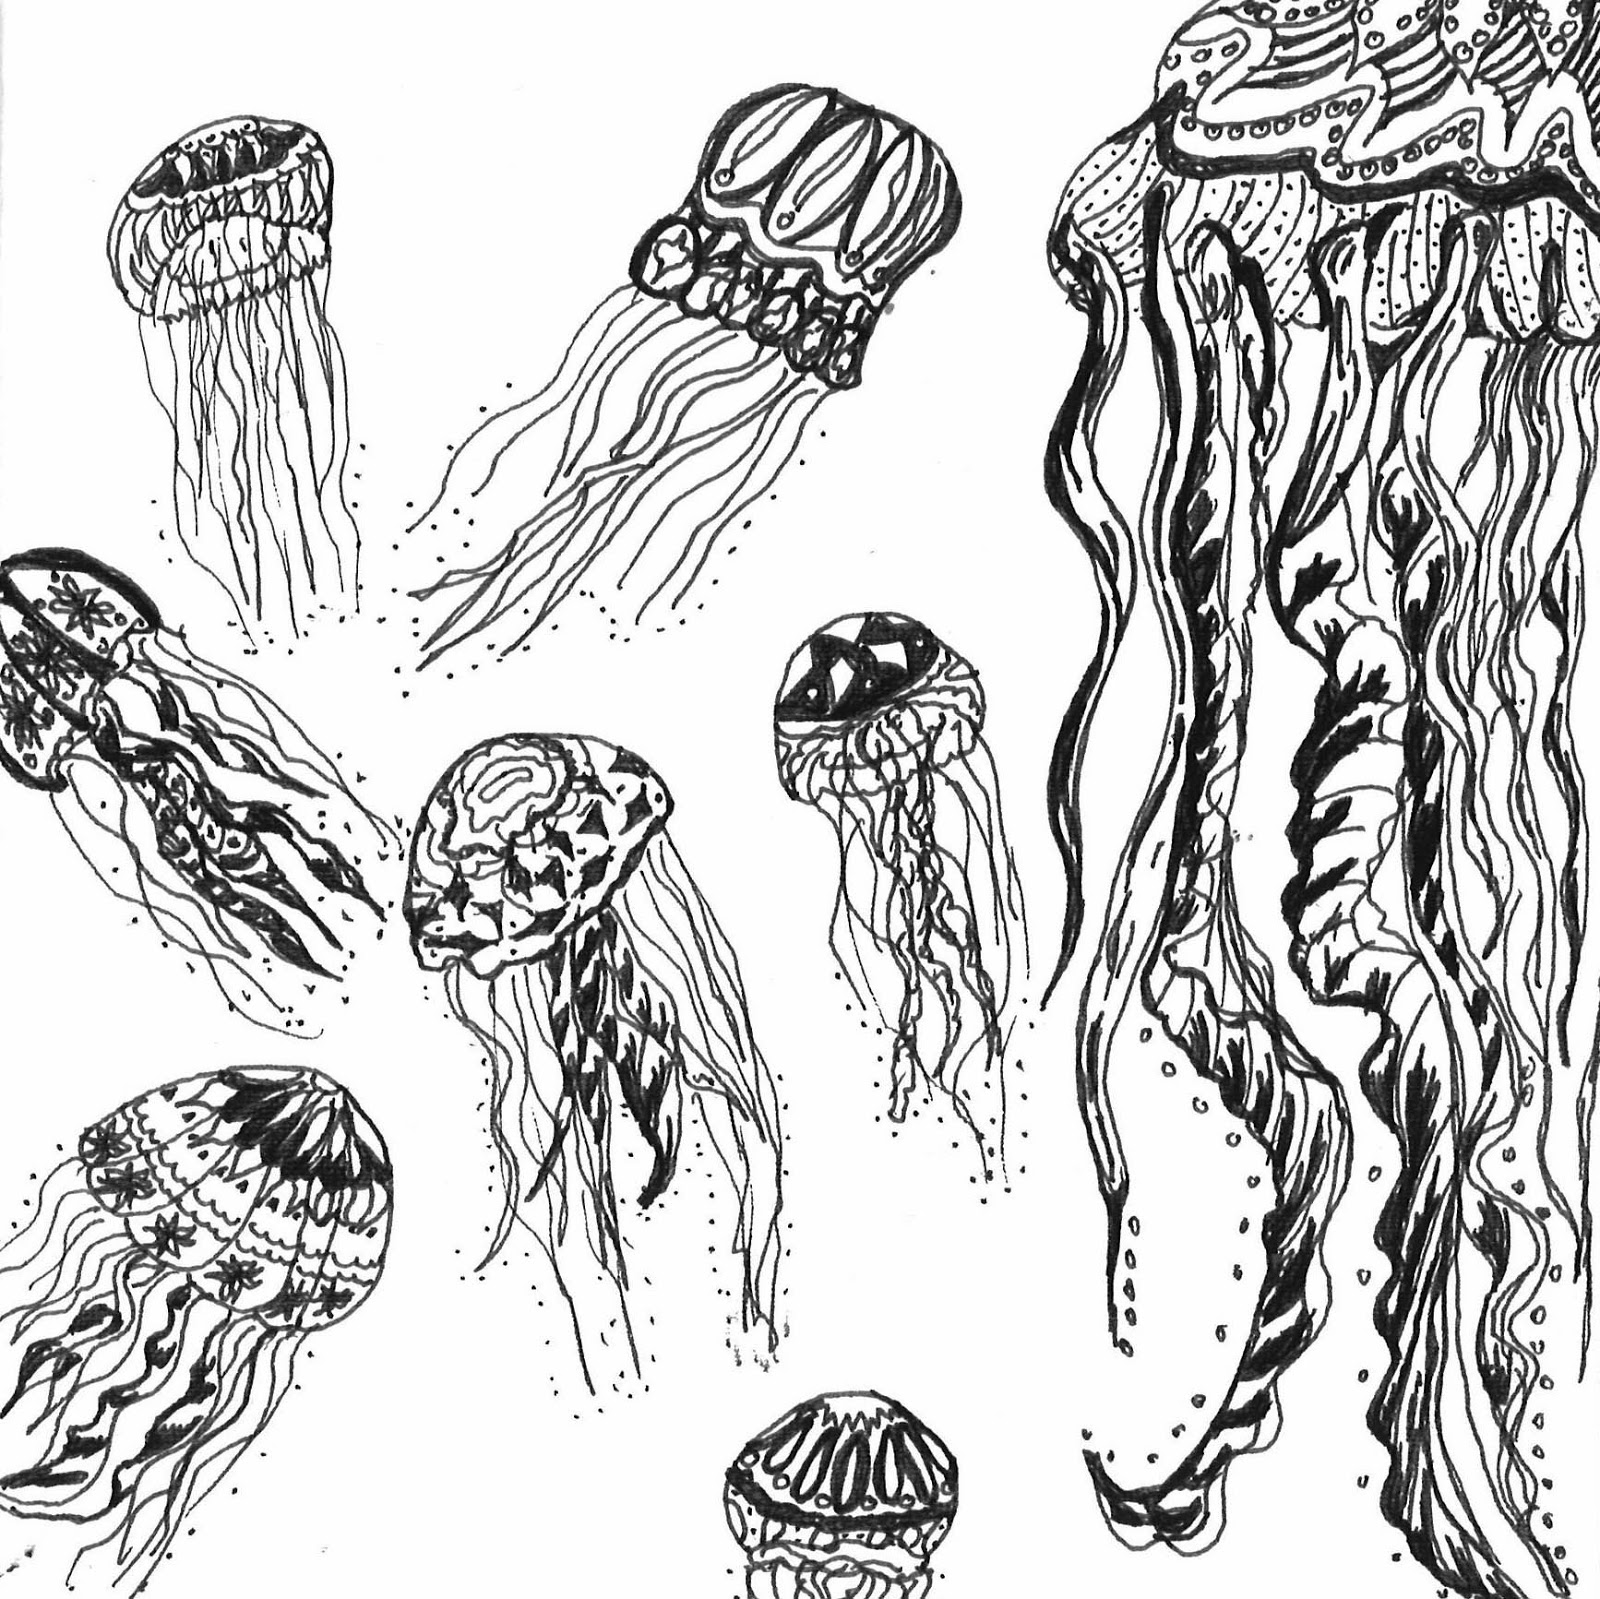 The Common Jellyfish: The Common Jellyfish